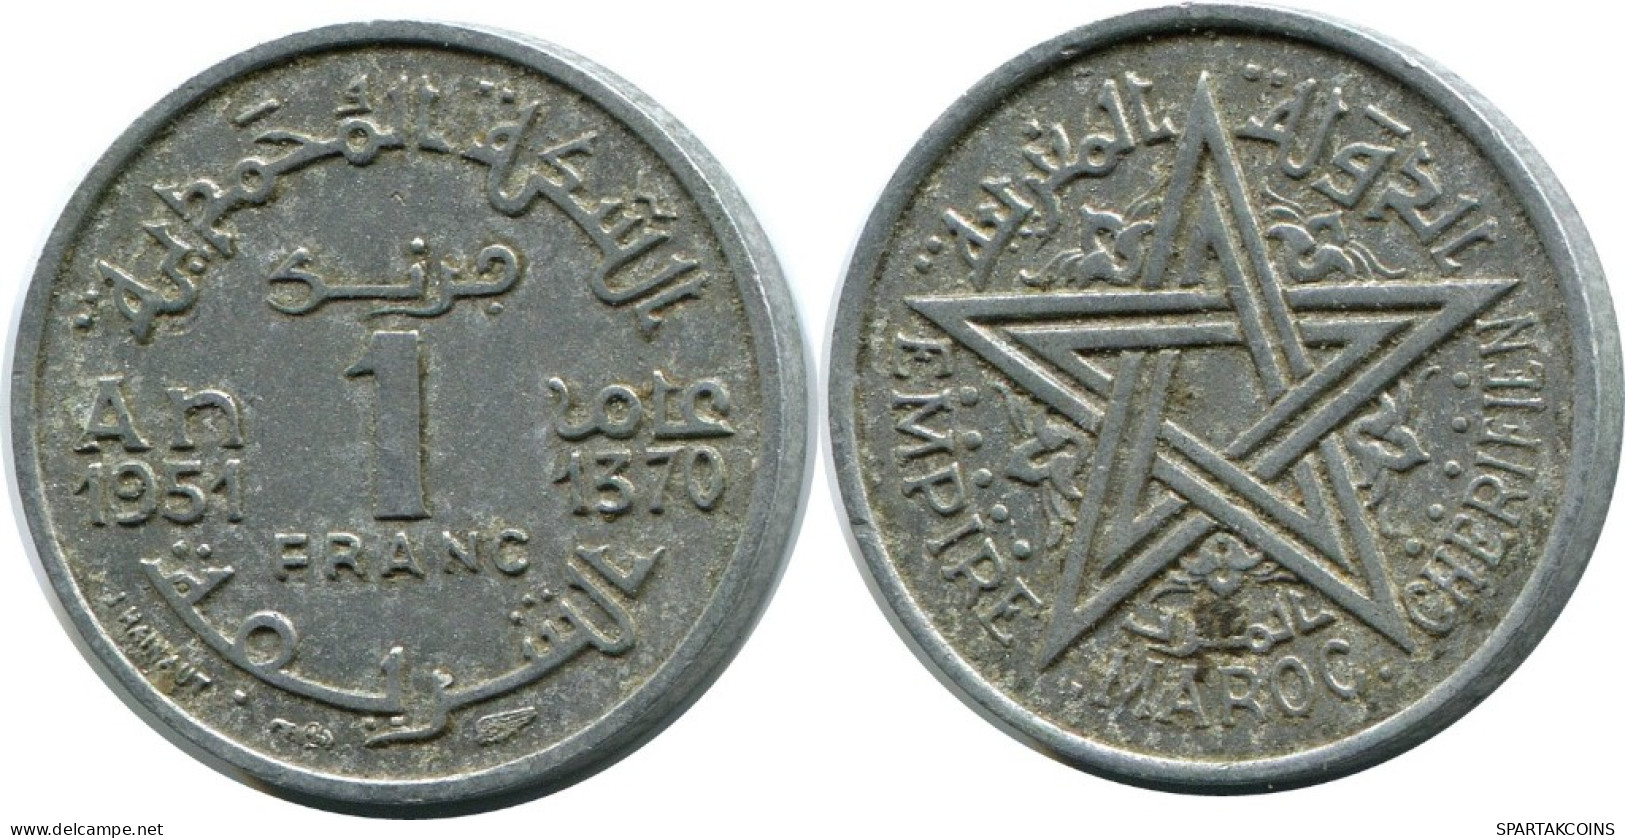 1 FRANC 1951 MOROCCO Islamic Coin #AH695.3.U.A - Maroc